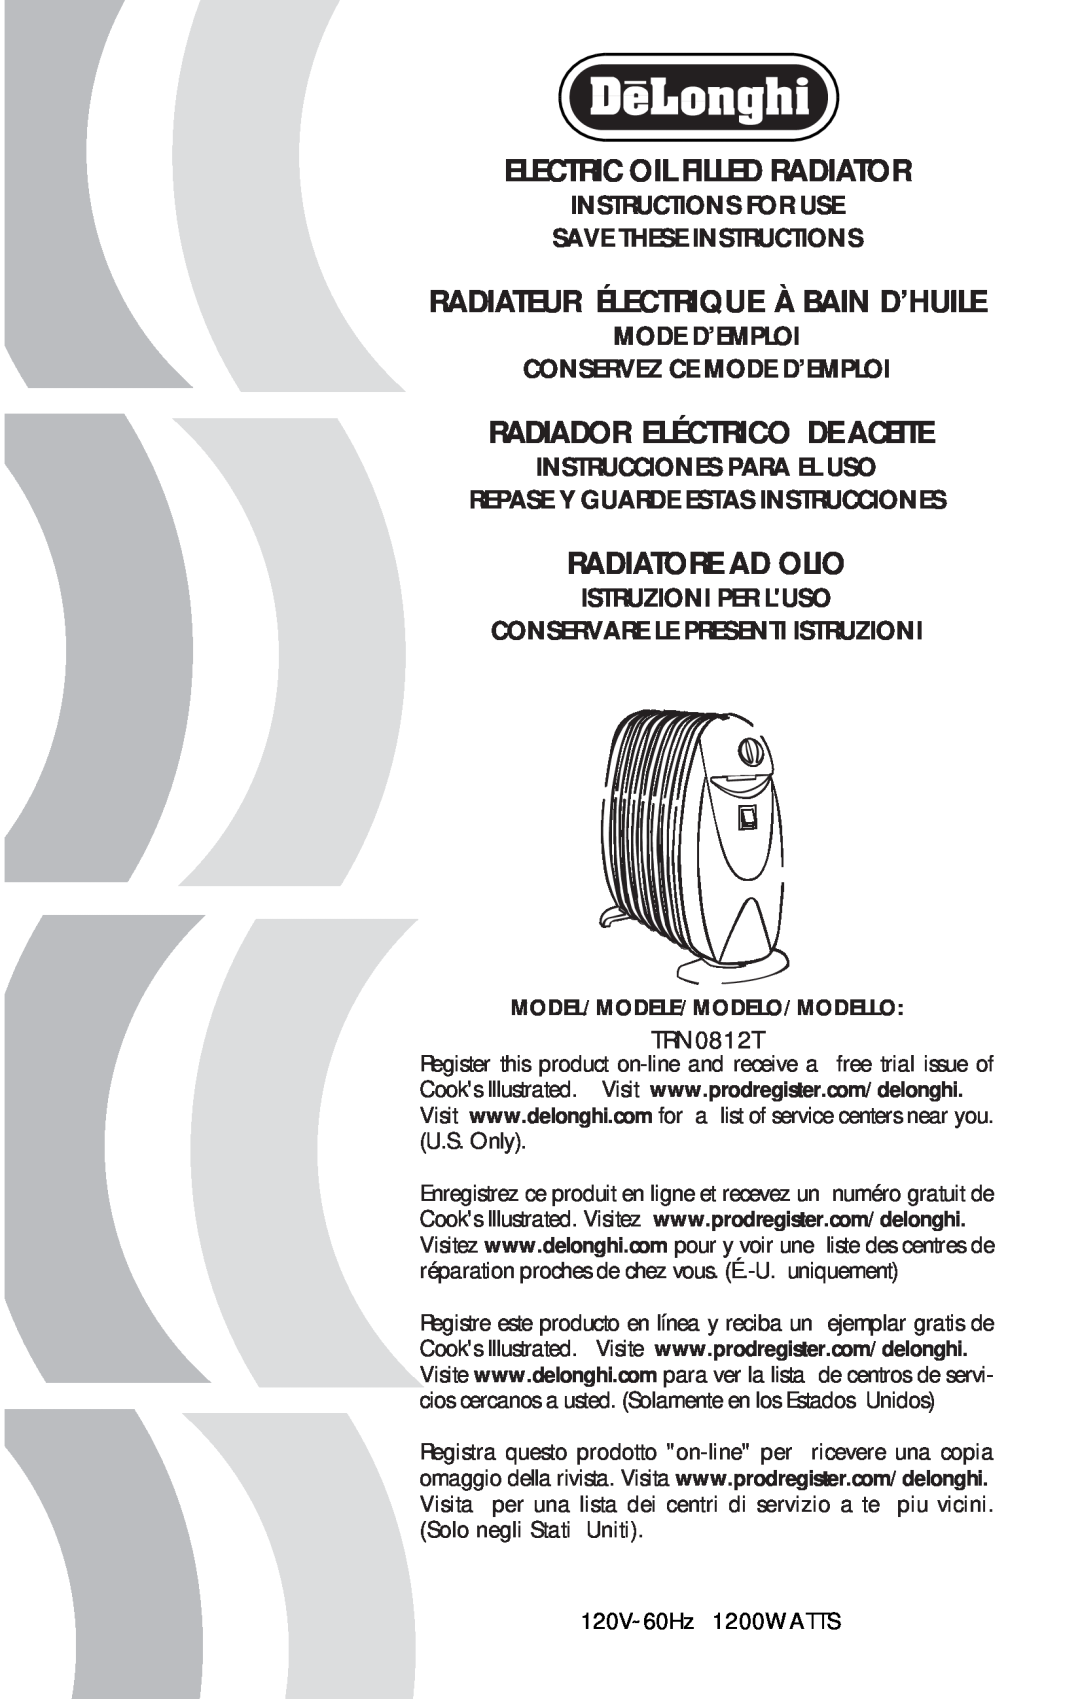 DeLonghi TRN0812T manual Electric Oil Filled Radiator, Radiador Eléctrico De Aceite, Radiateur Électrique À Bain D’Huile 